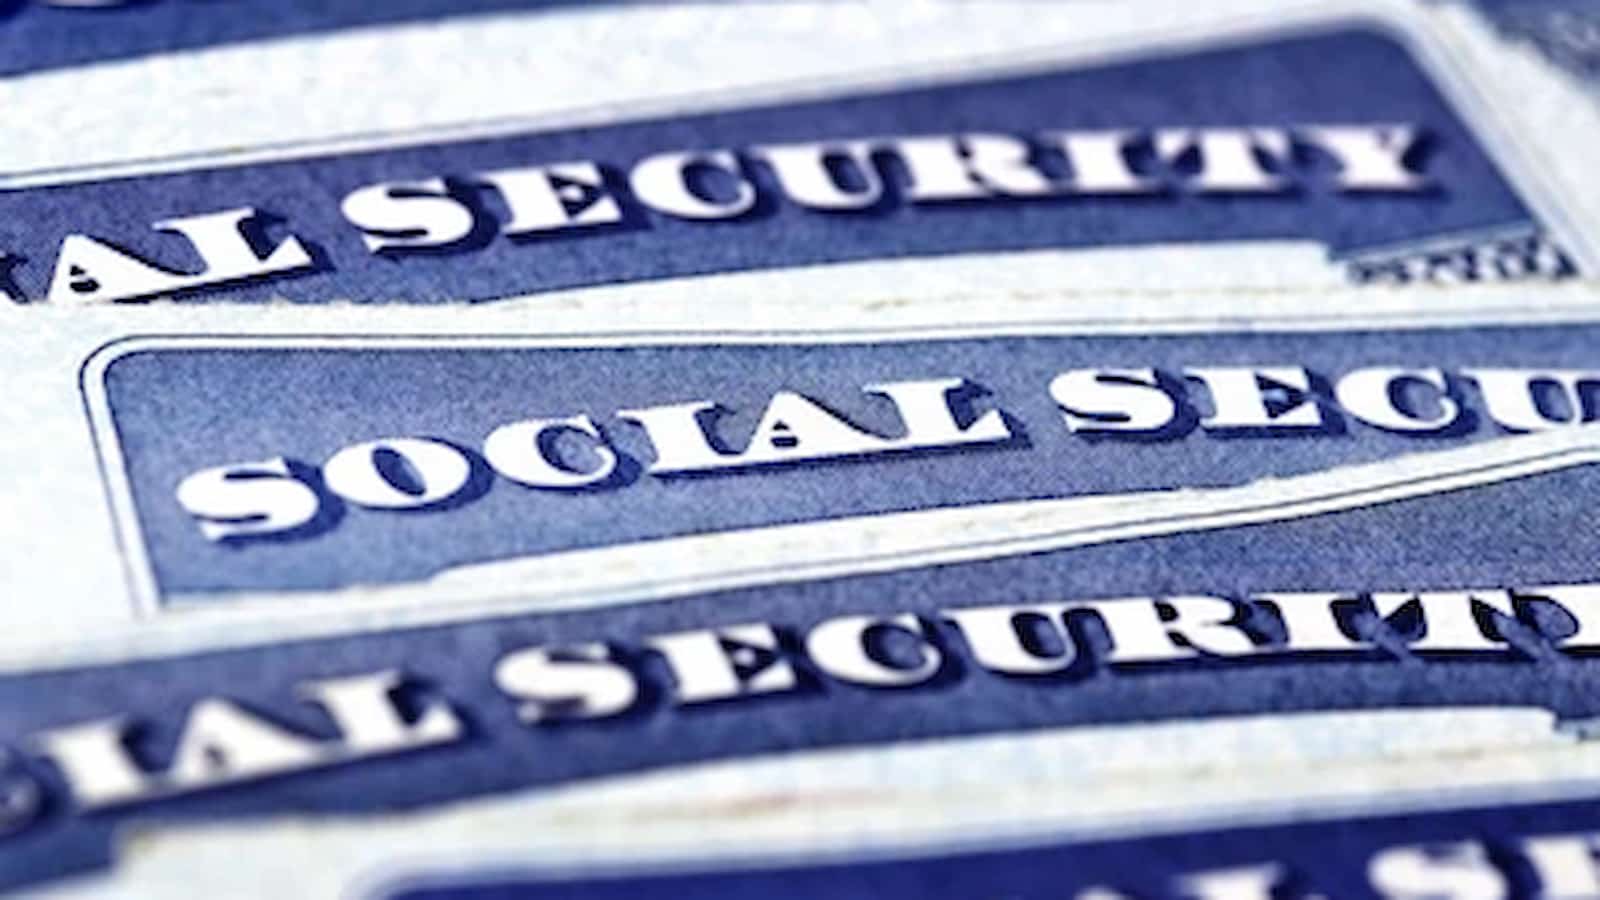 Should Social Security recipients file a tax return